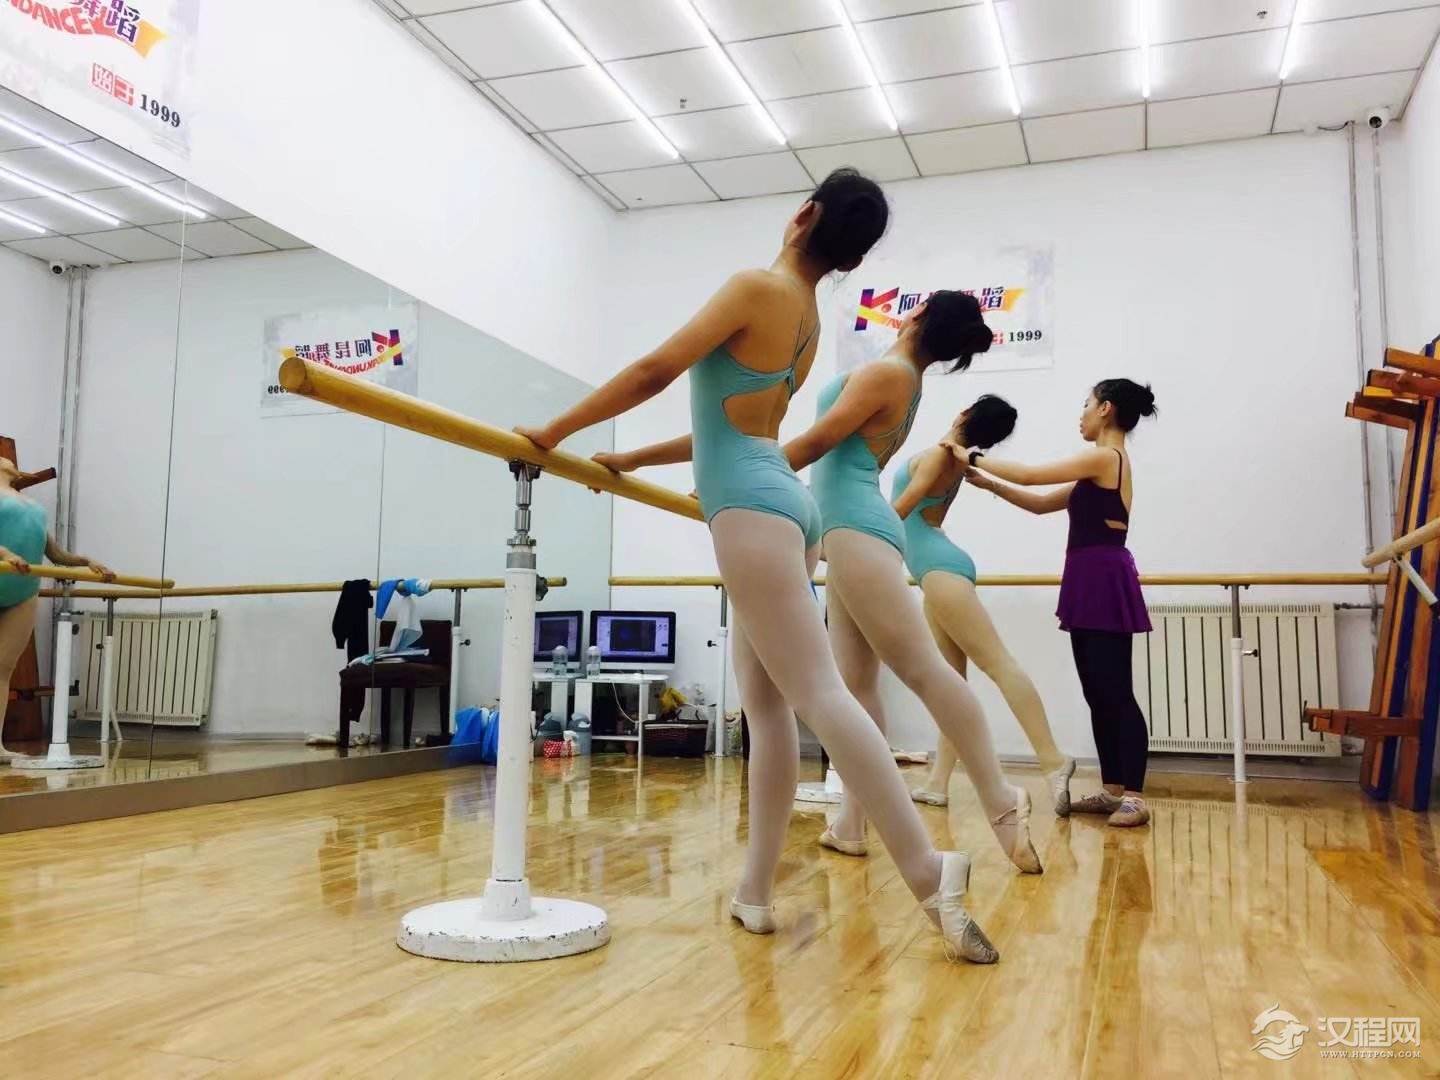 芭蕾被成为“腿脚的艺术” 芭蕾舞蹈形体训练的科学原理介绍